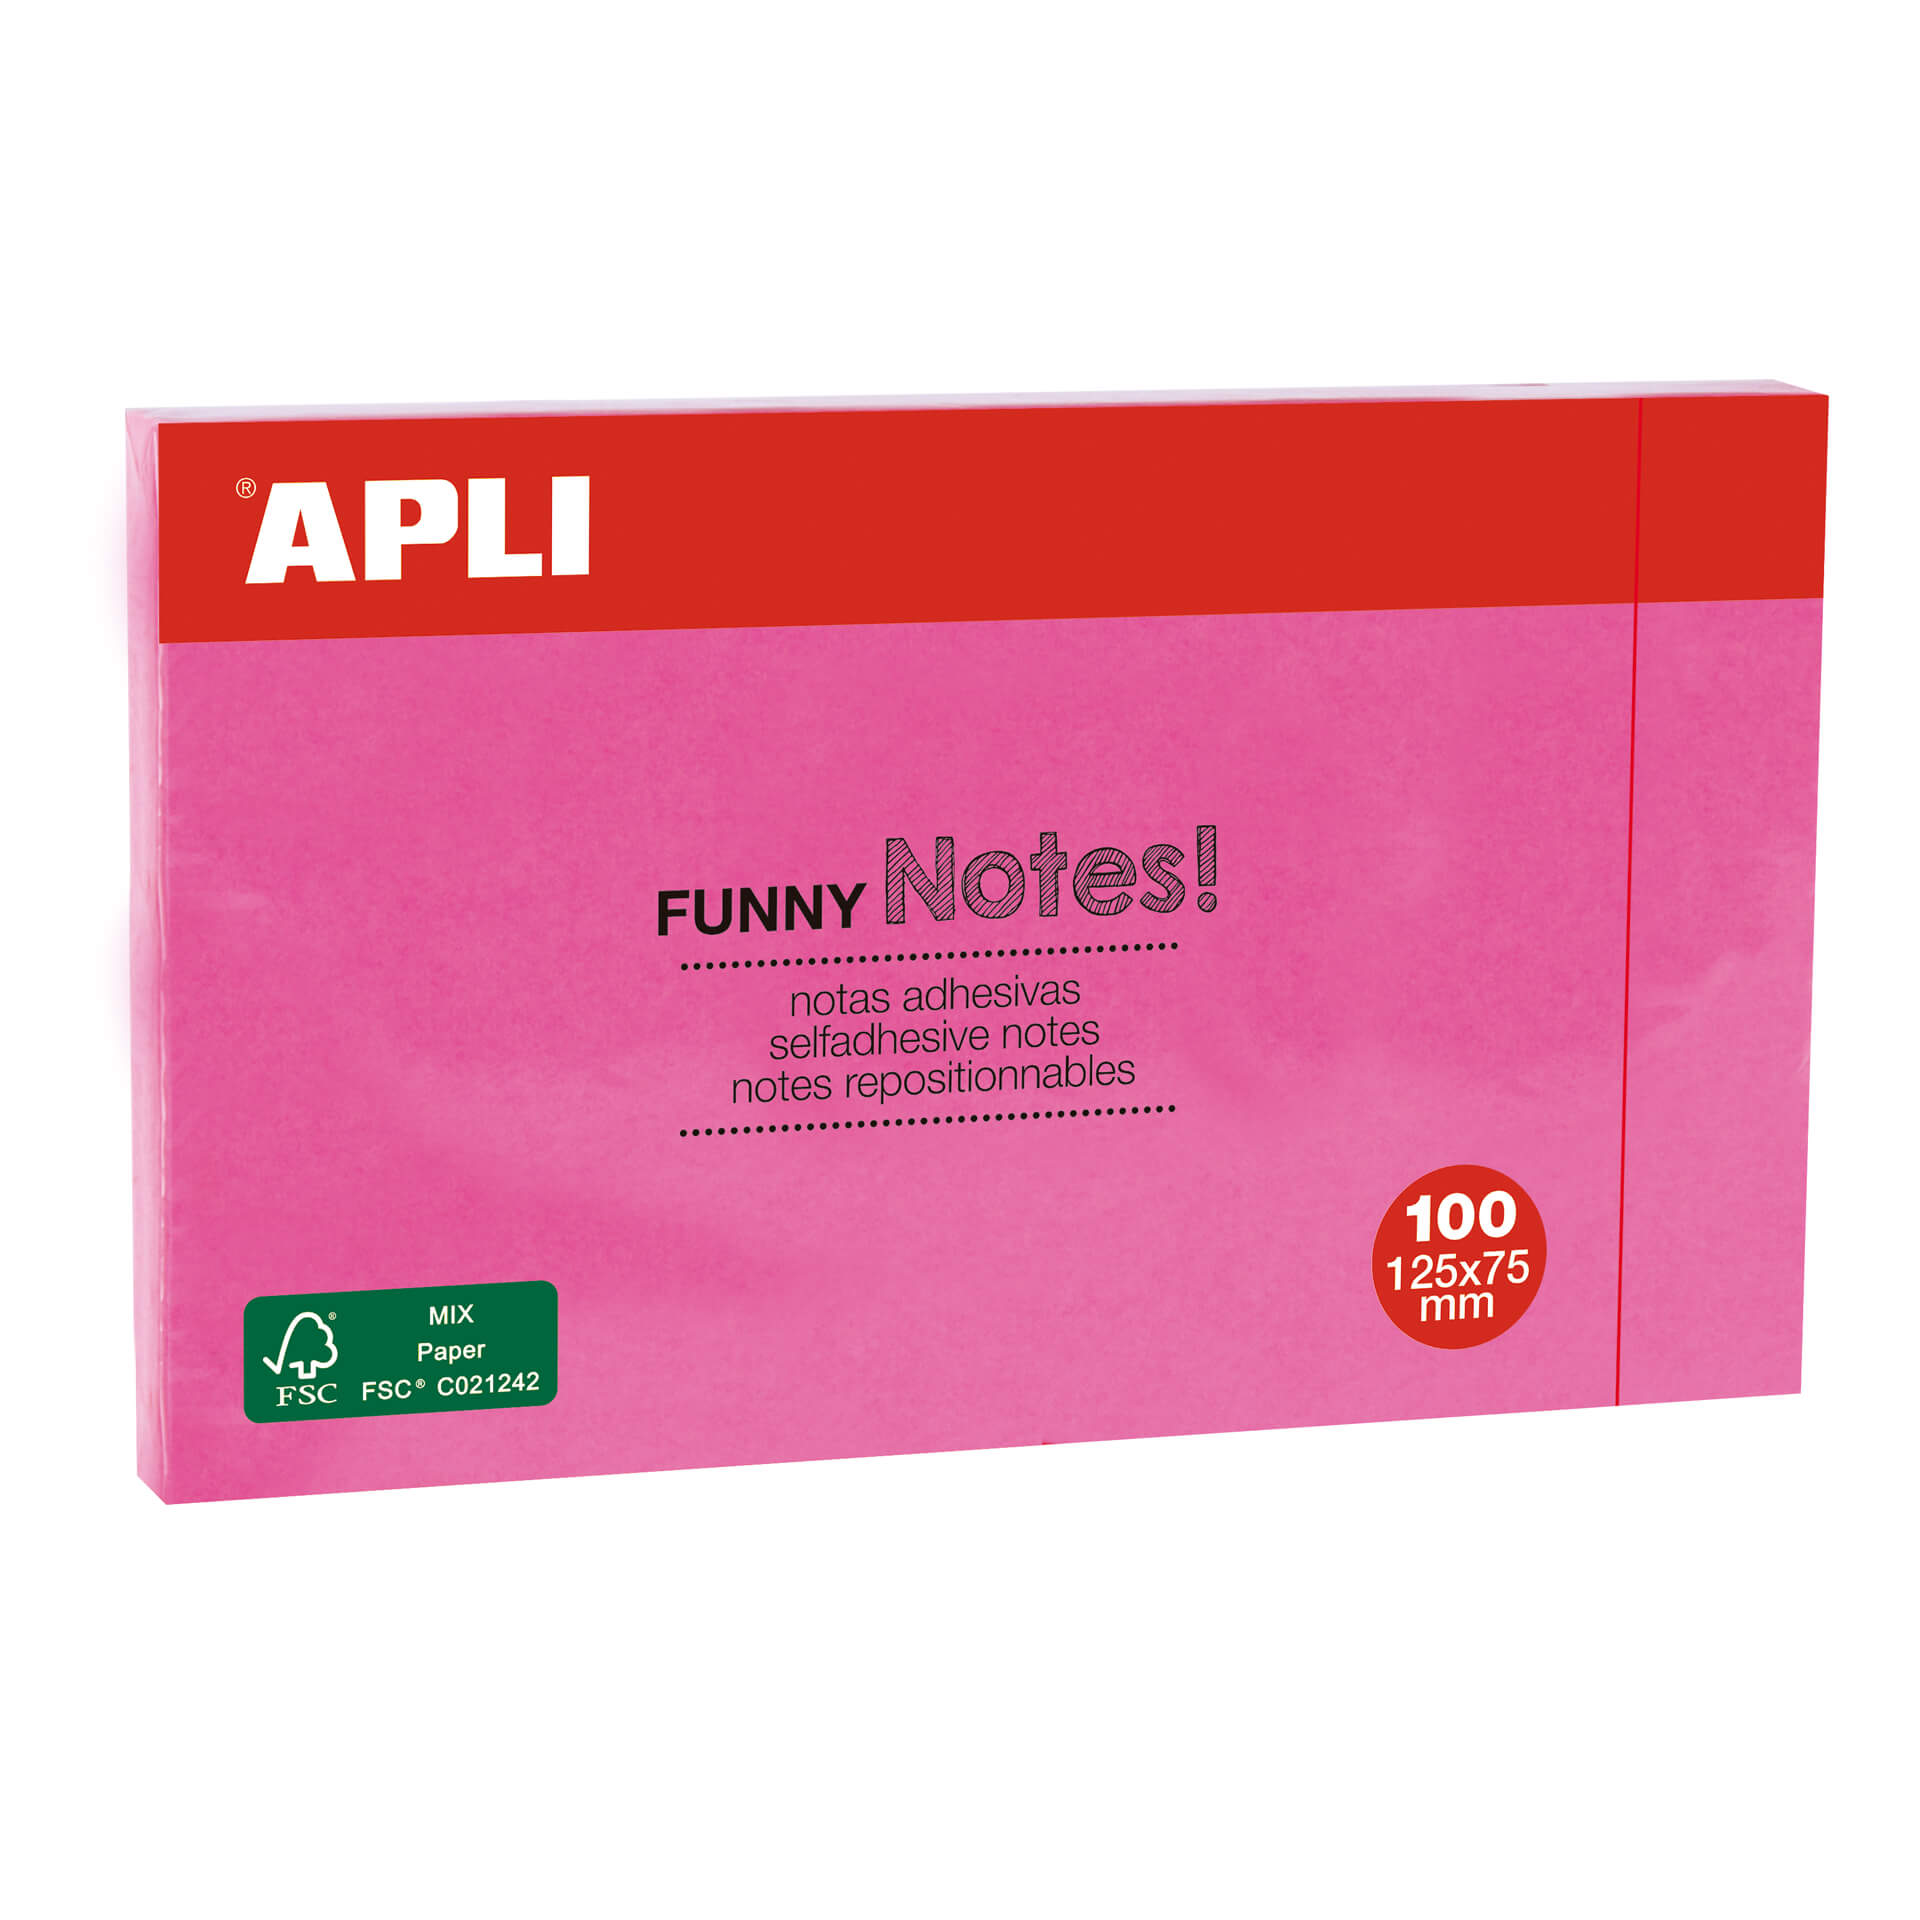 Apli Funny Sticky Notes 125x75mm - Bloc de 100 feuilles - Adhésif de qualité - Facile à décoller - Rose fluo